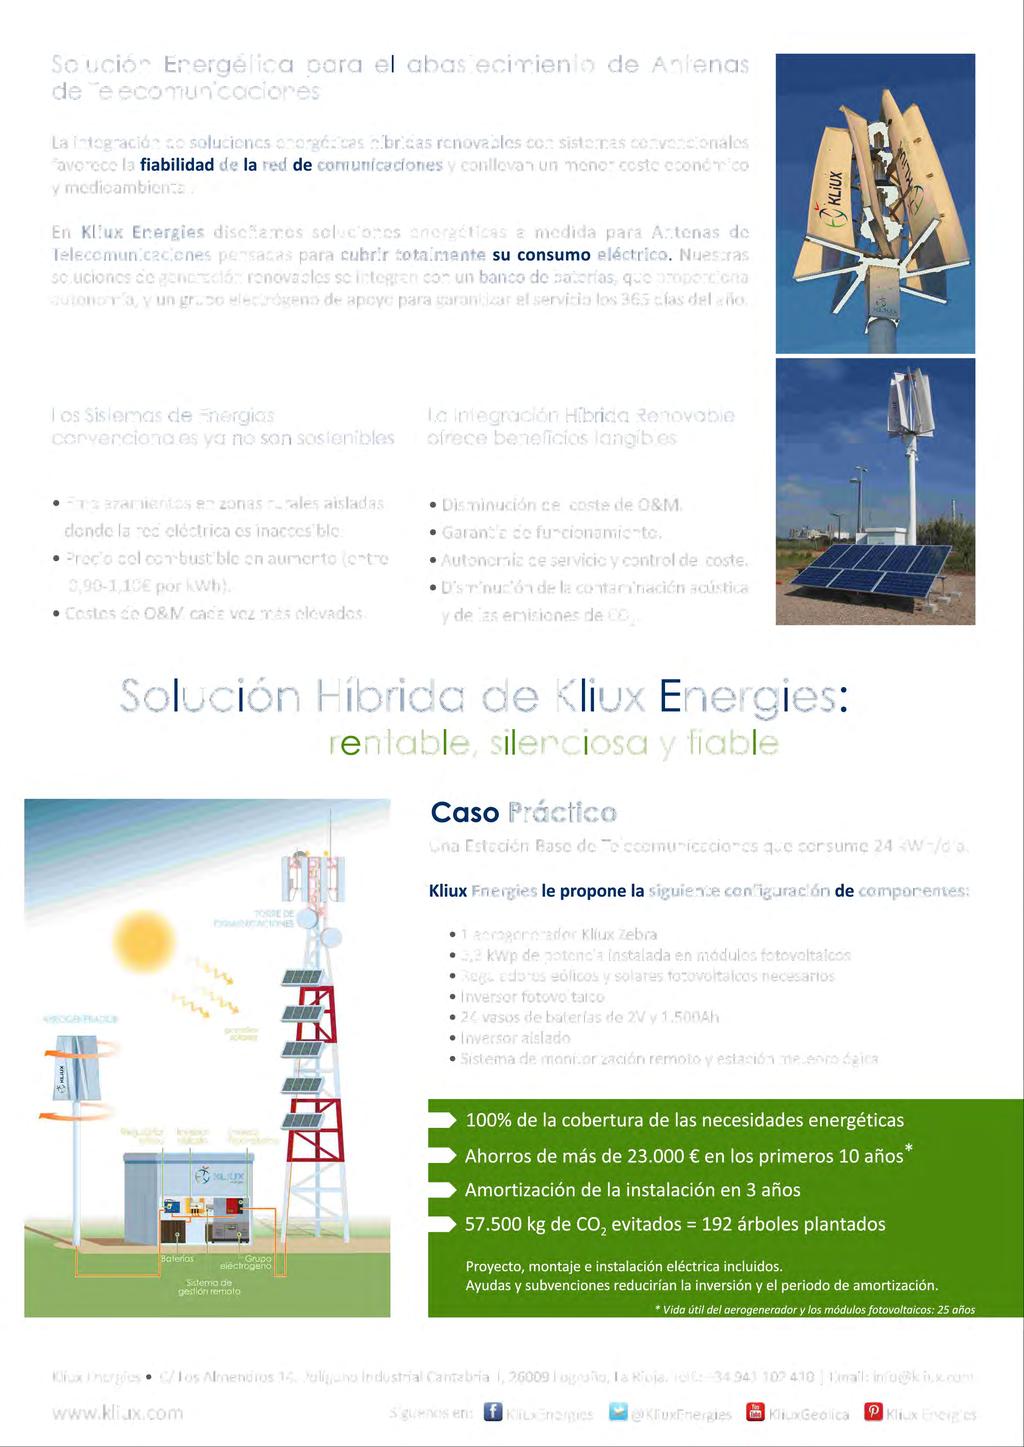 Solución Energética para el abastecimiento de Antenas de Telecomunicaciones La integración de soluciones energéticas híbridas renovables con sistemas convencionales favorece la fiabilidad de la red